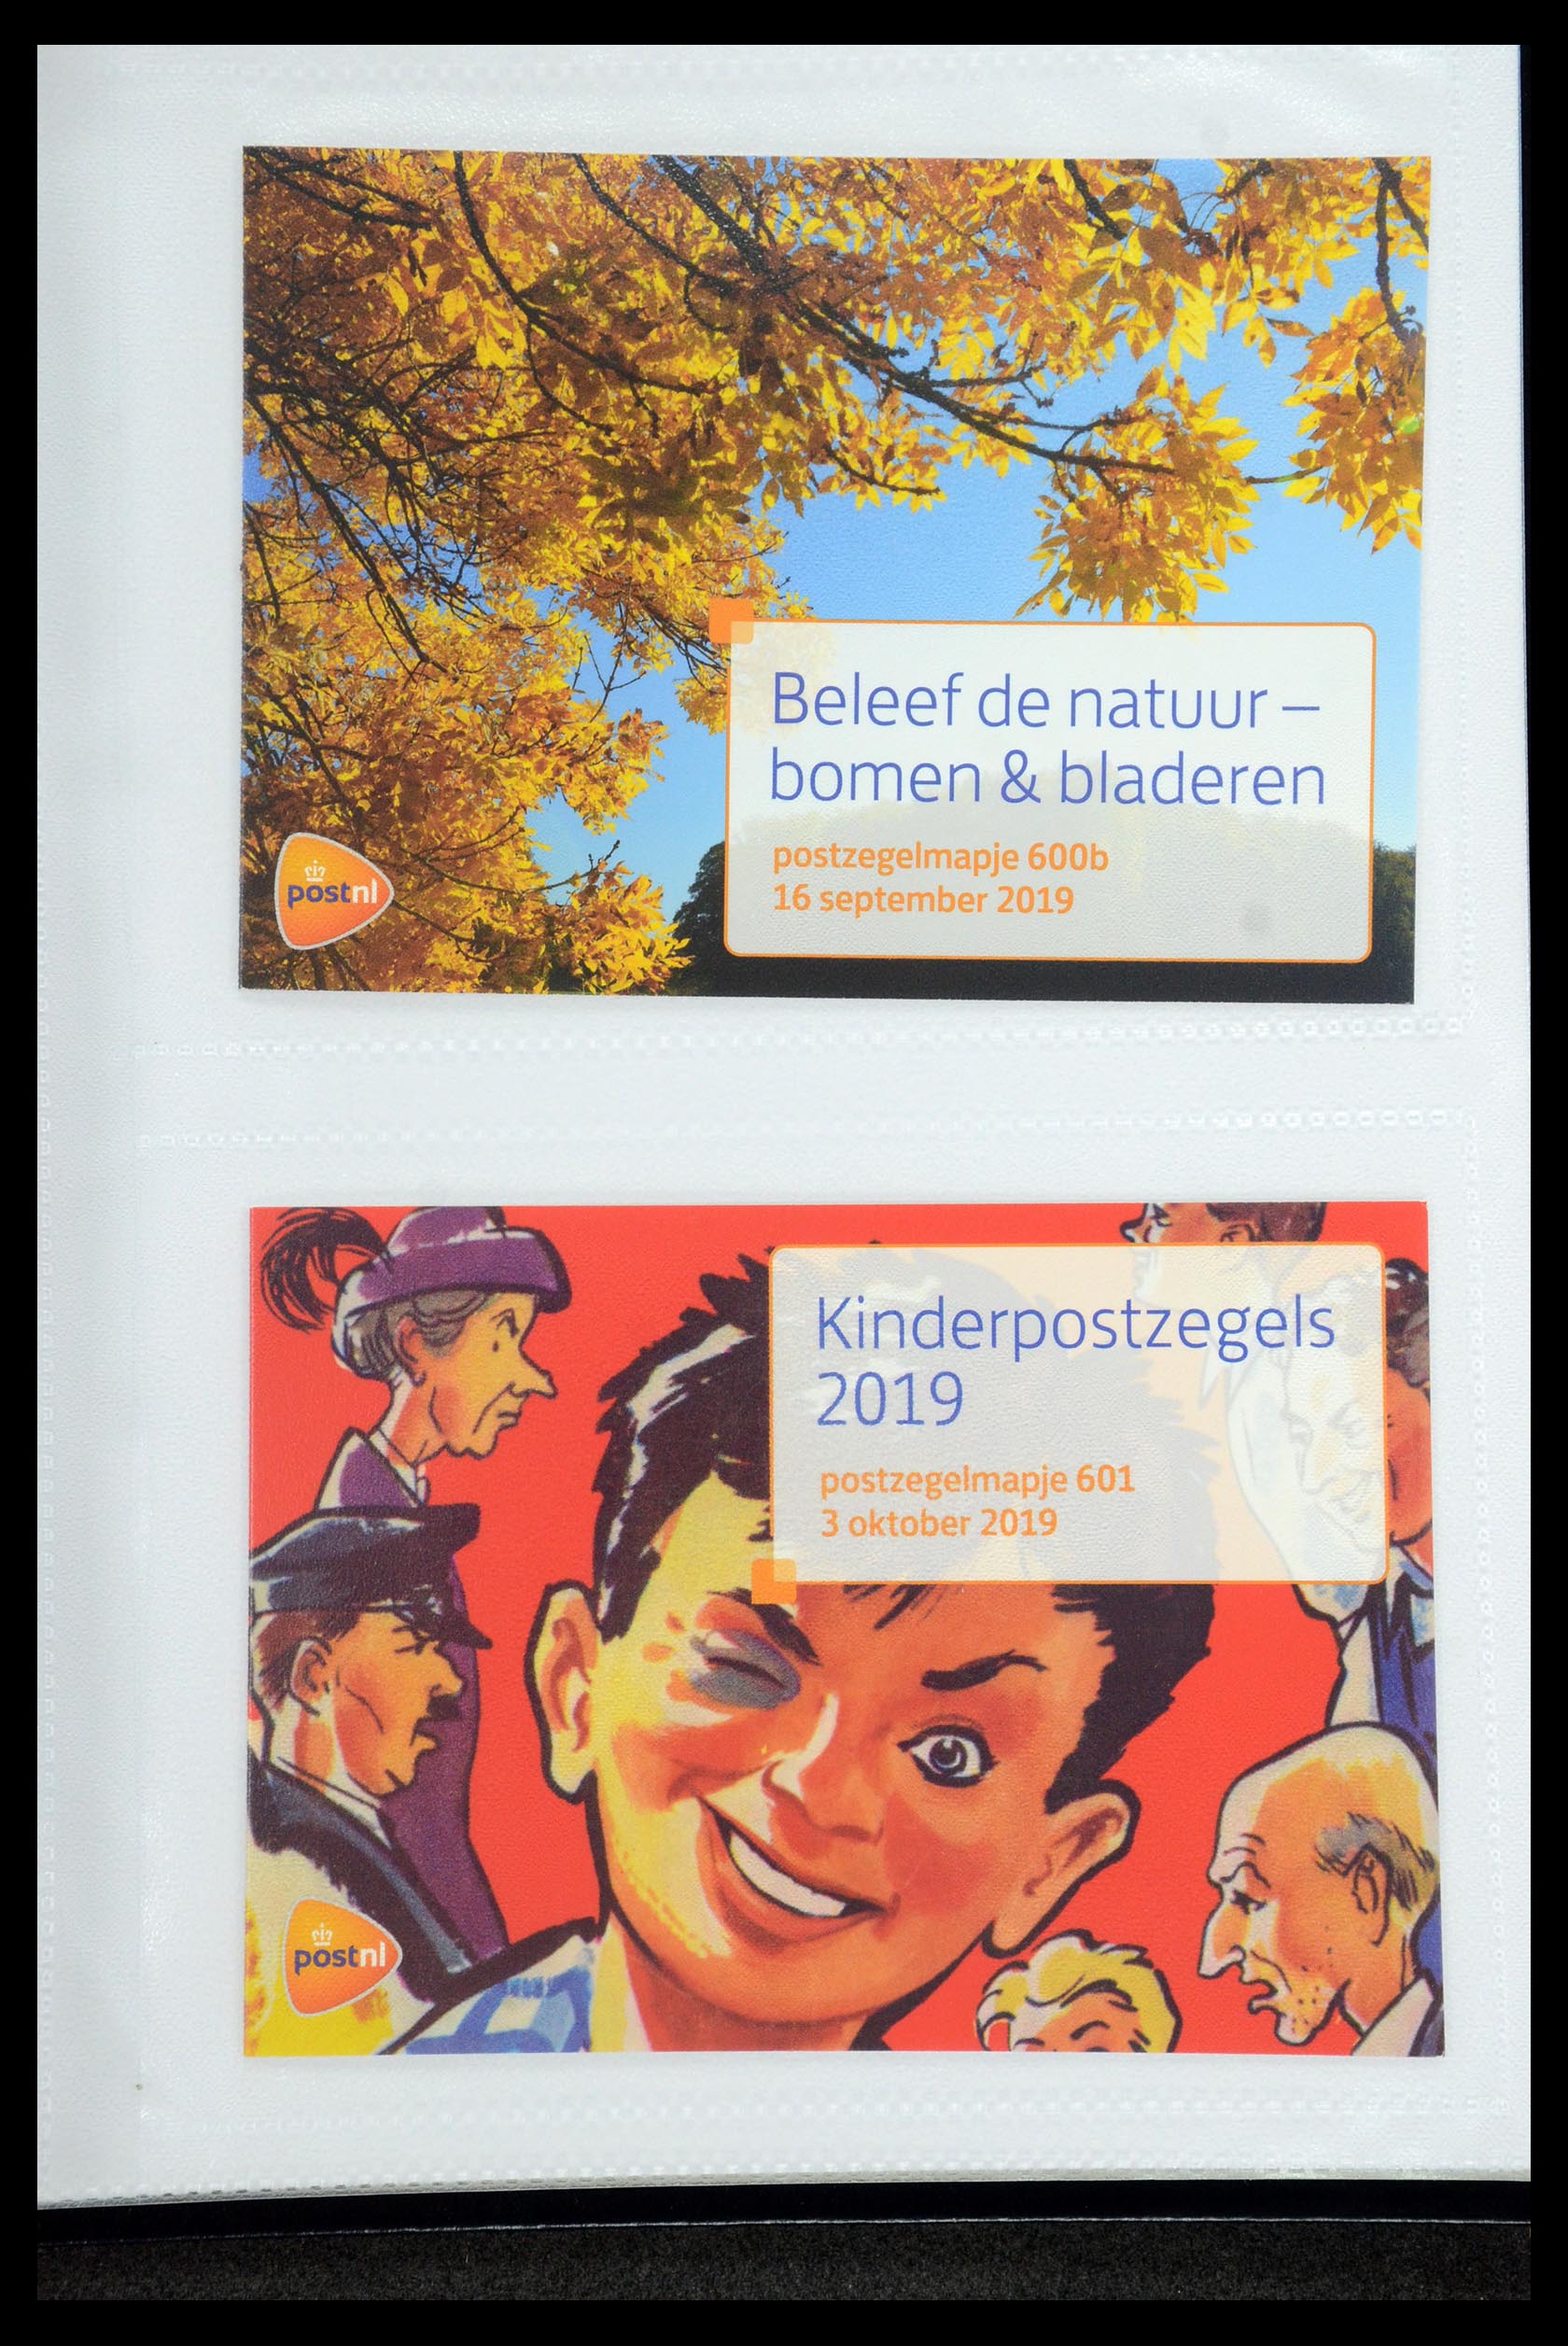 35947 363 - Stamp Collection 35947 Netherlands PTT presentation packs 1982-2019!